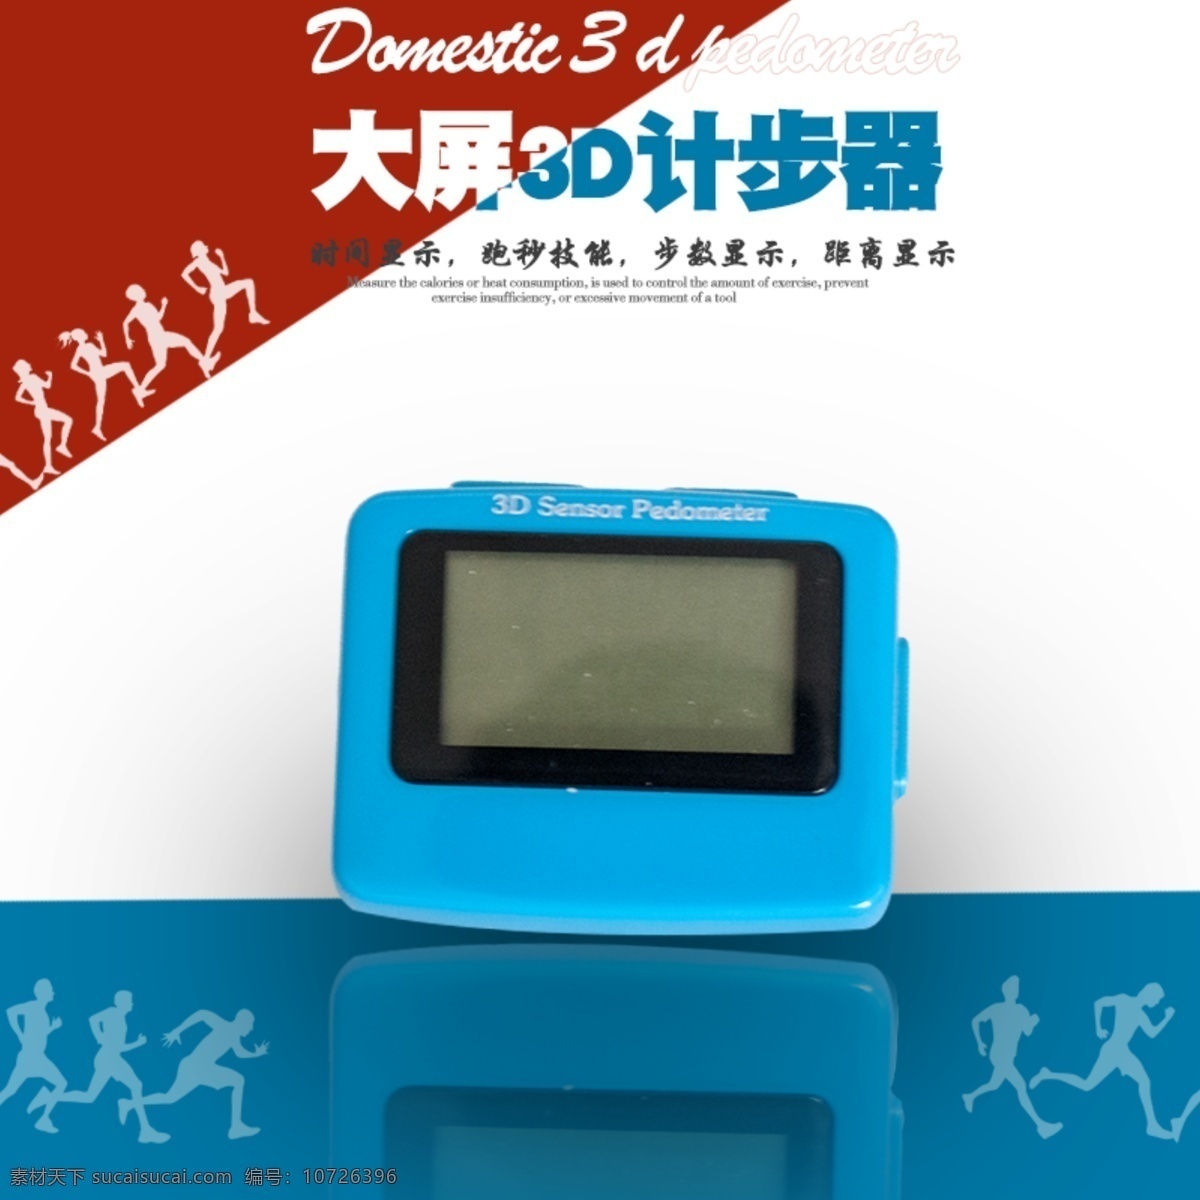 计步器主图 计步器 跑步 电子 锻炼 3d